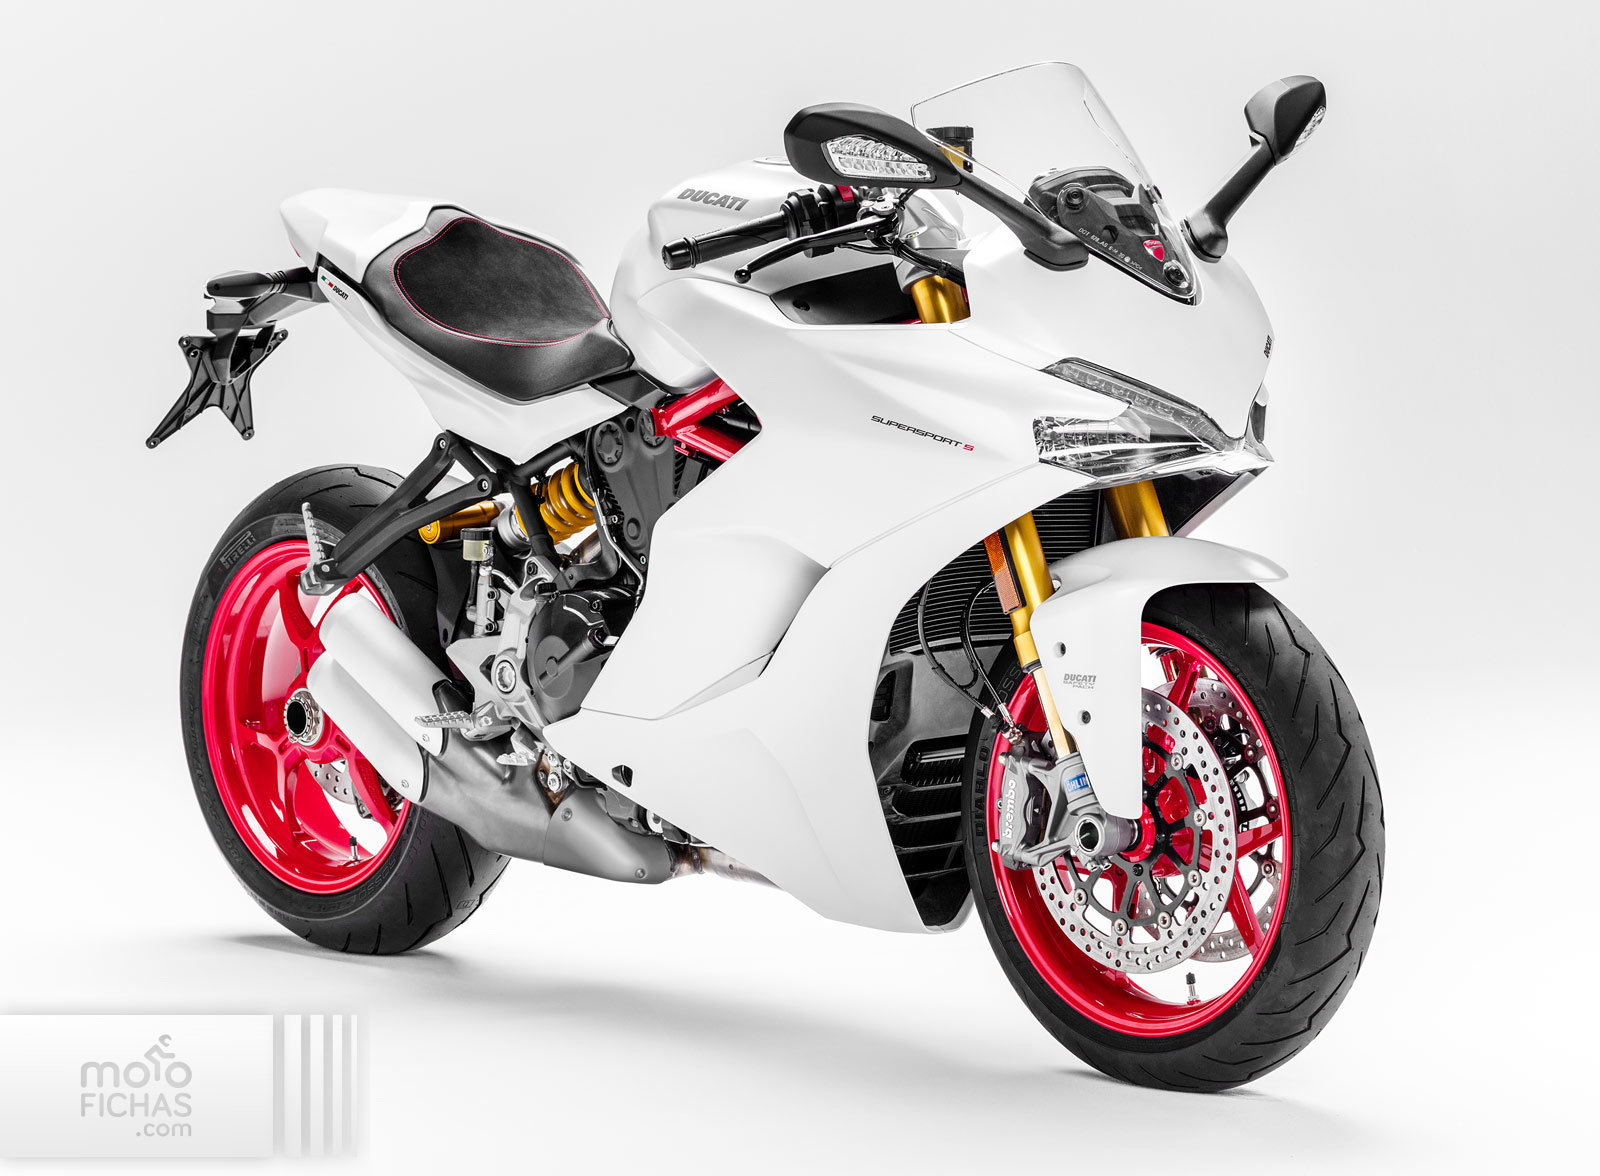 New Matt Titanium Grey Color for 2019 Ducati SuperSport 